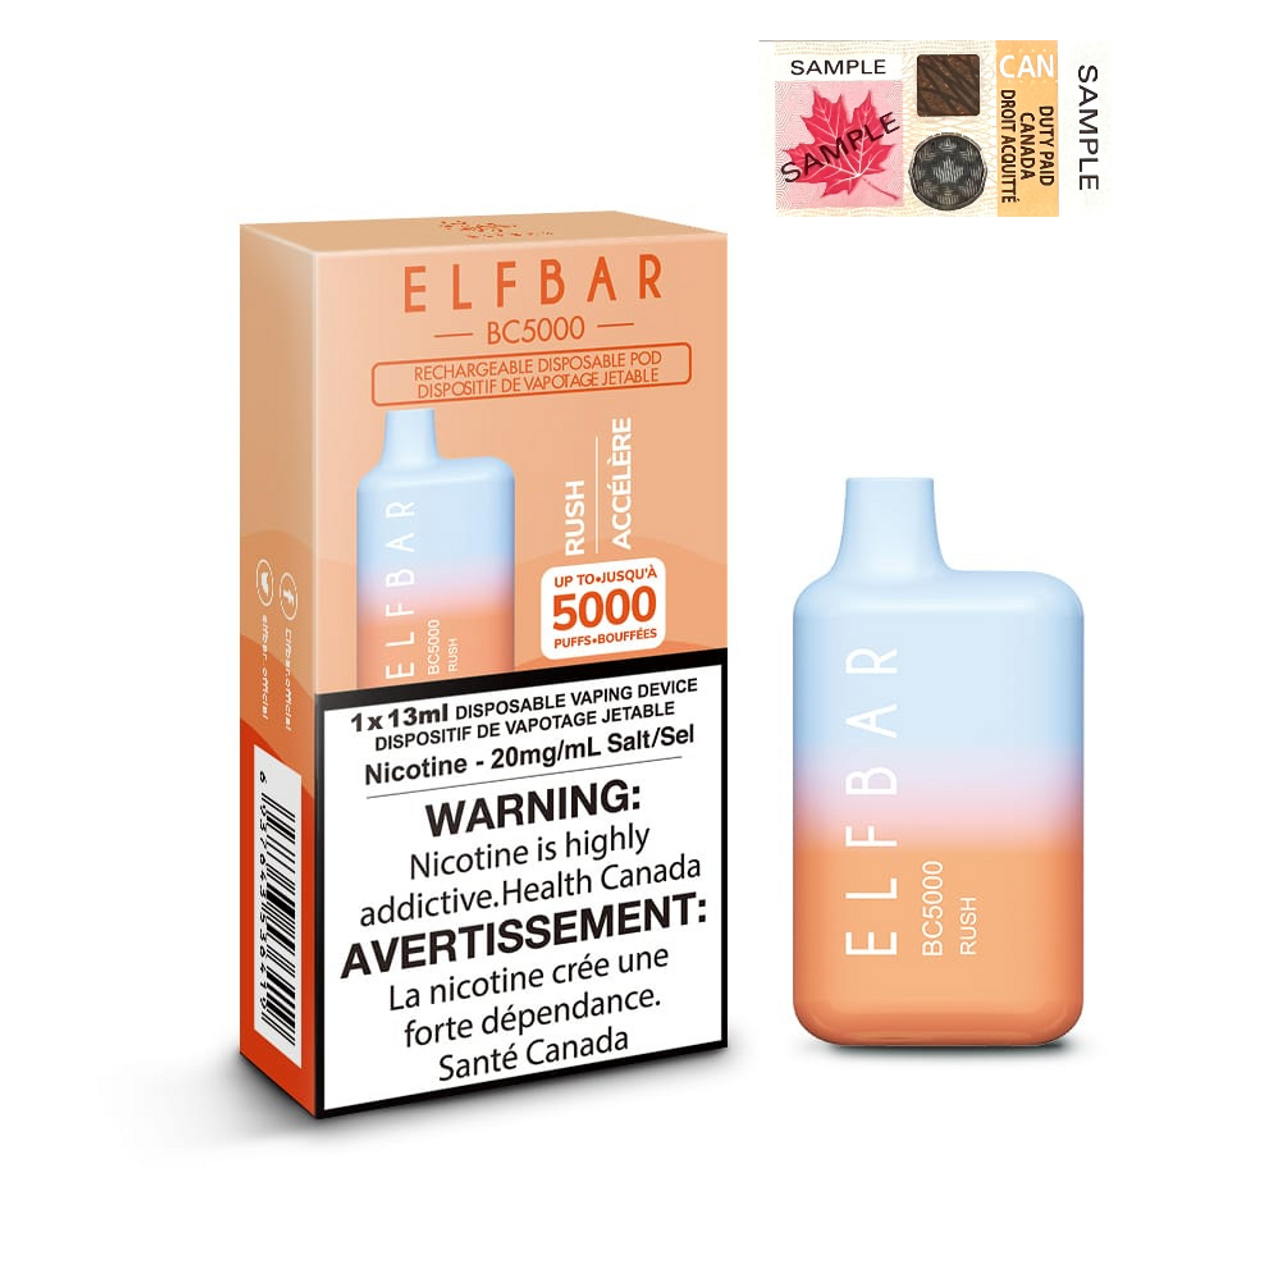 (Stamped) Elfbar Rush 5000 Puffs Disposable Vape Ct 10